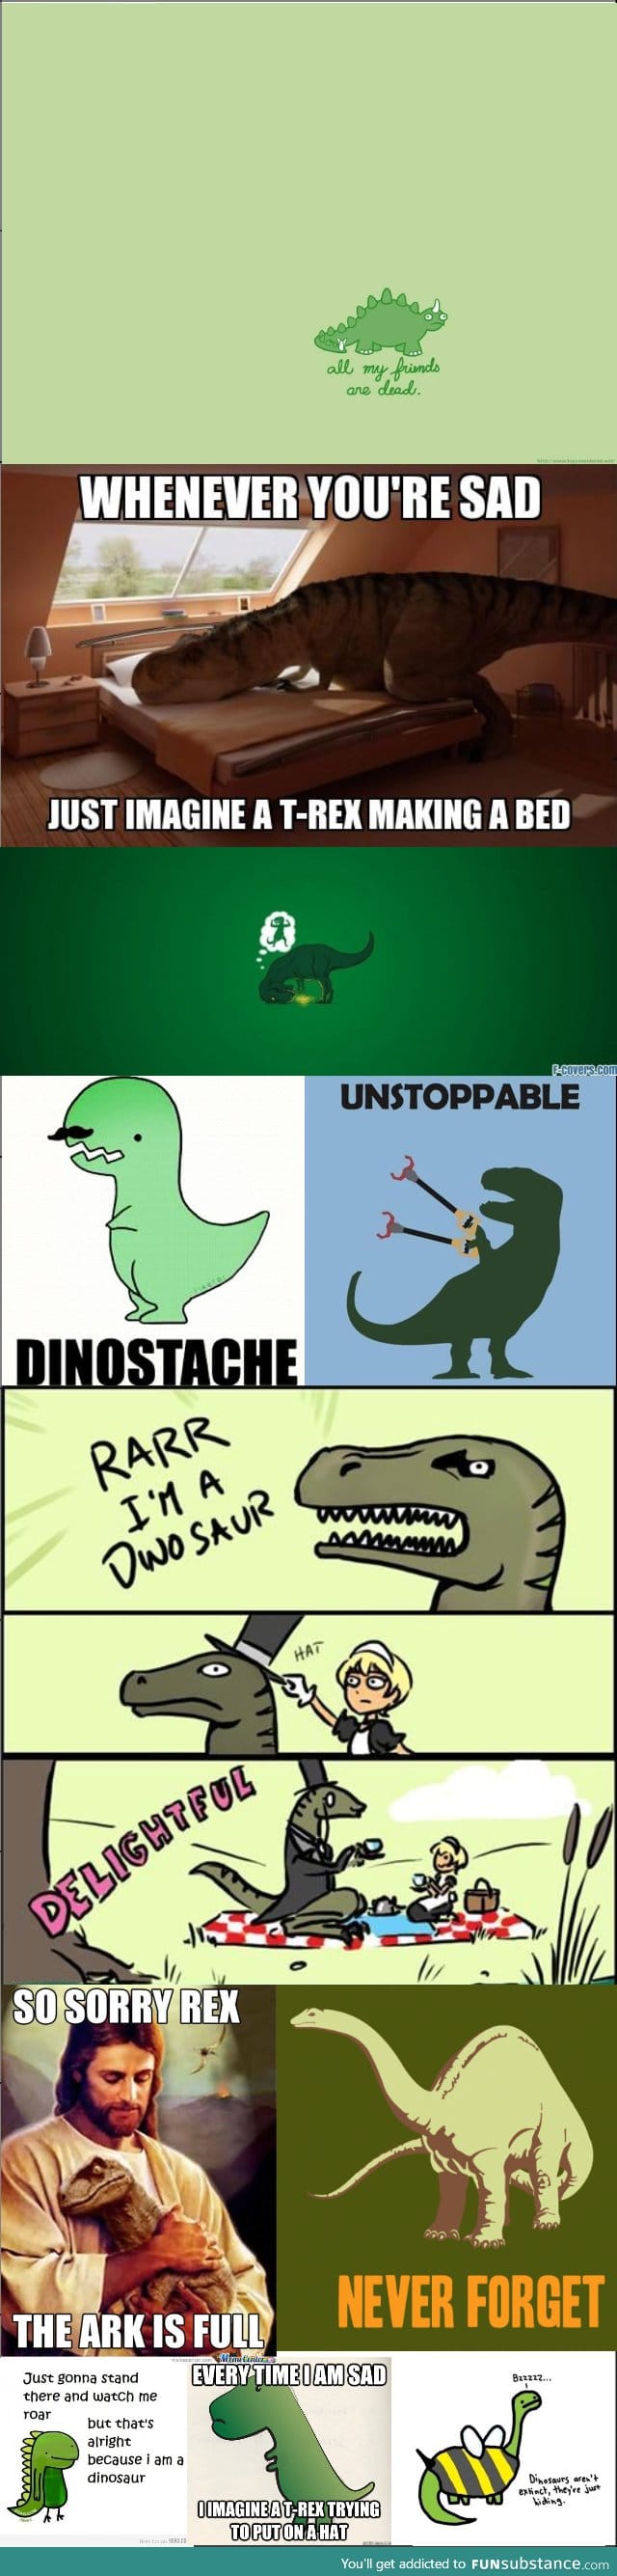 Dinosaurus compilation